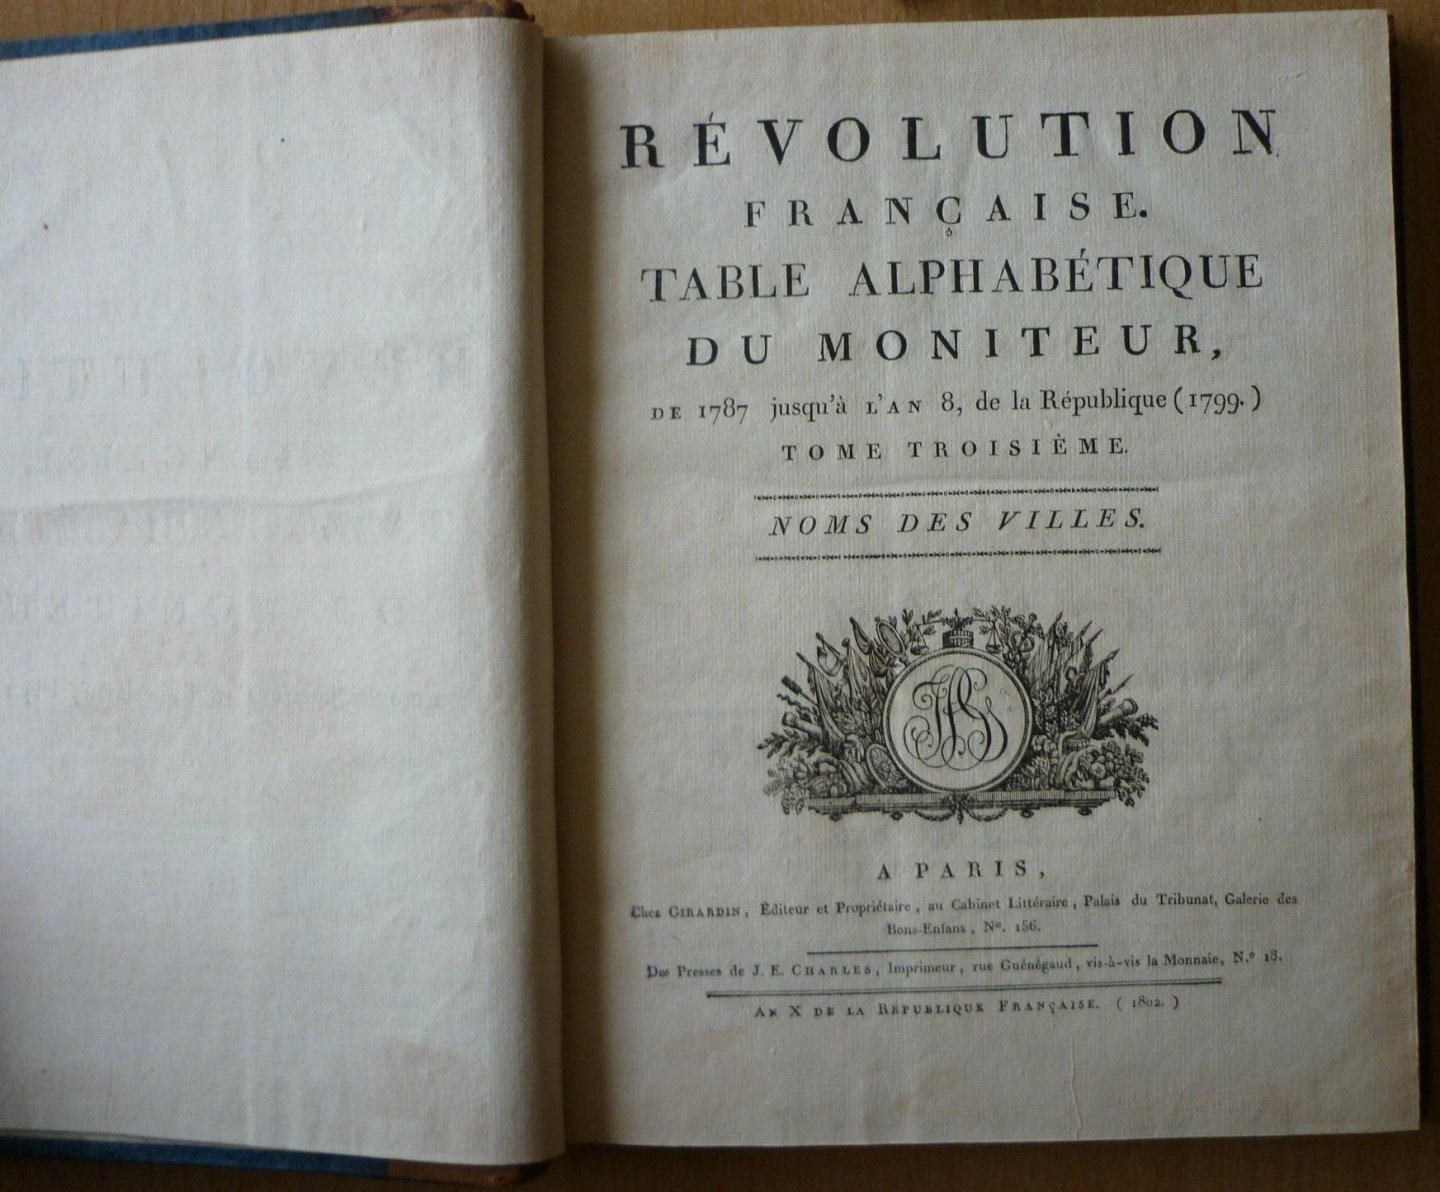  - Révolution Française. Table alphabétique du Moniteur de 1787 jusqu' à l'an 8 de la République (1799) Tome troisième Noms des Villes